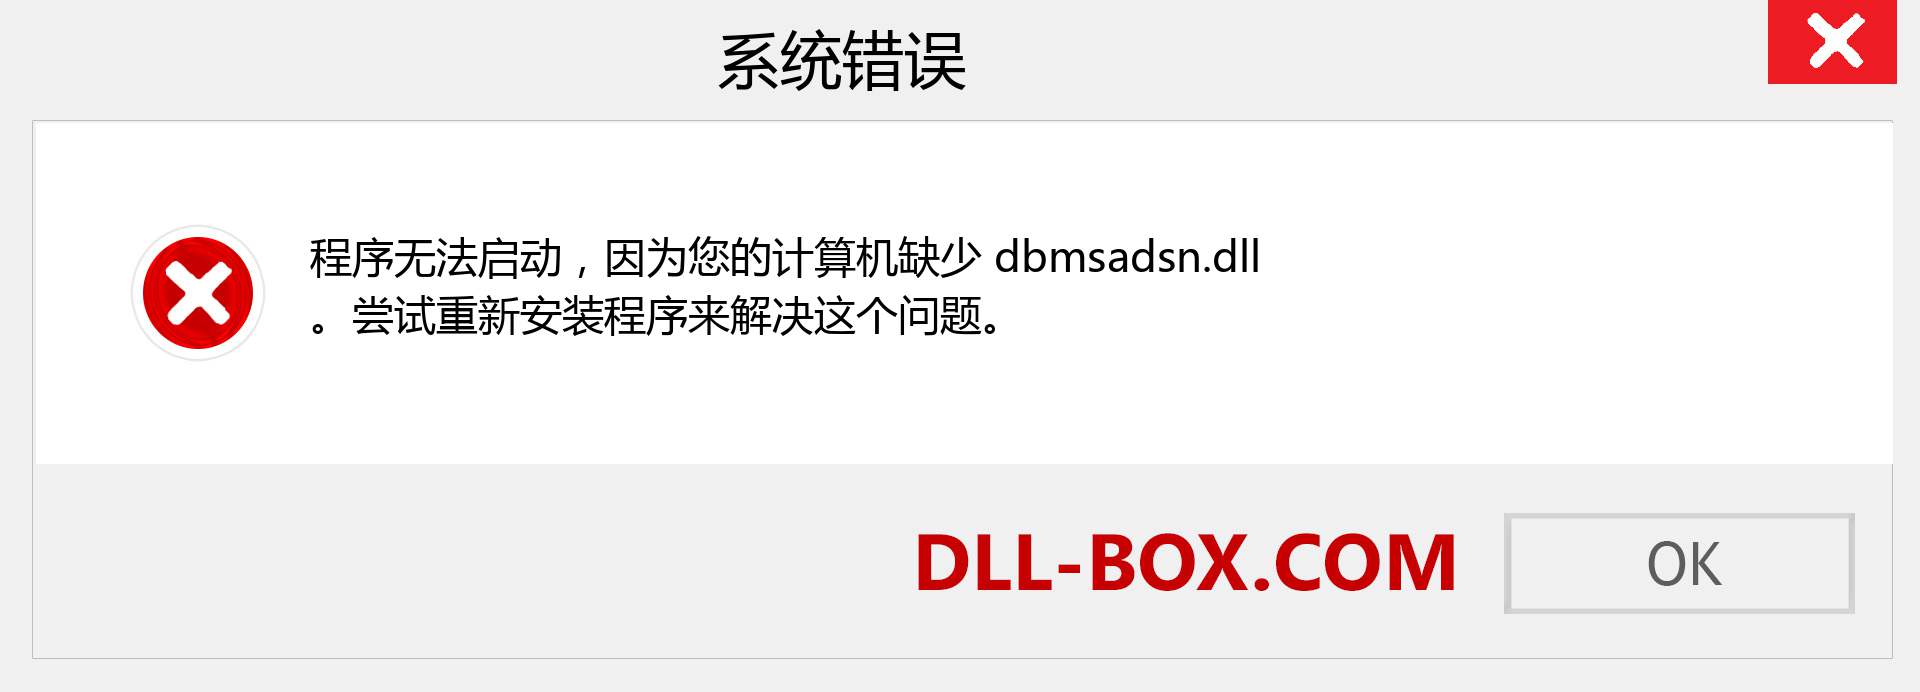 dbmsadsn.dll 文件丢失？。 适用于 Windows 7、8、10 的下载 - 修复 Windows、照片、图像上的 dbmsadsn dll 丢失错误